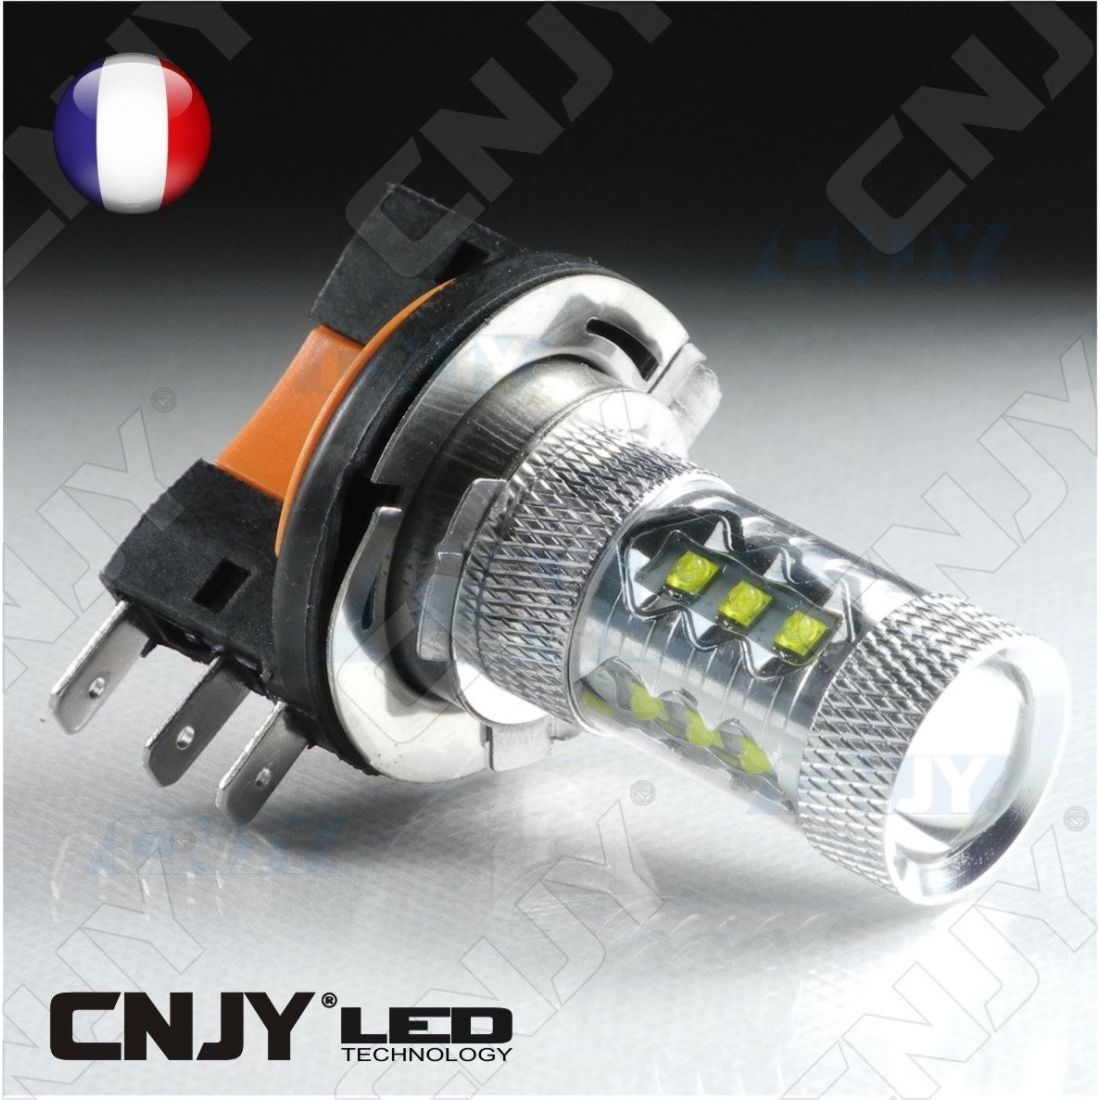 EBTOOLS pour h15 led Ampoule de H15 80w LED, ampoules blanches coudées de  80p H15 LED de 2pcs pour la lampe de lumières diurnes Feux de voiture